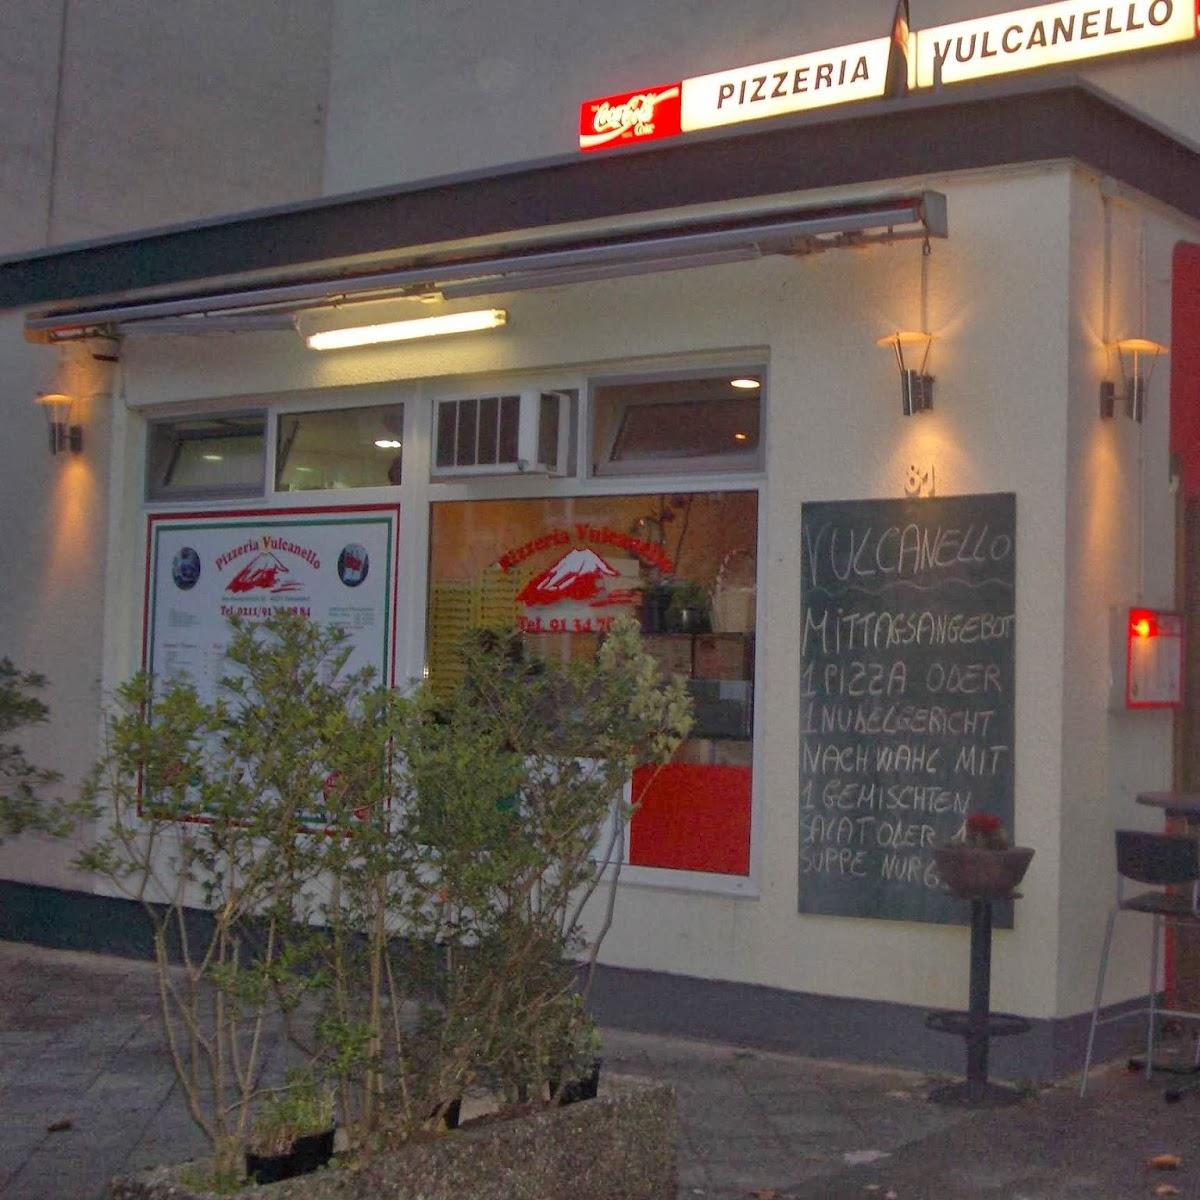 Restaurant "Pizzeria & Trattoria Vulcanello Wein bar" in Düsseldorf